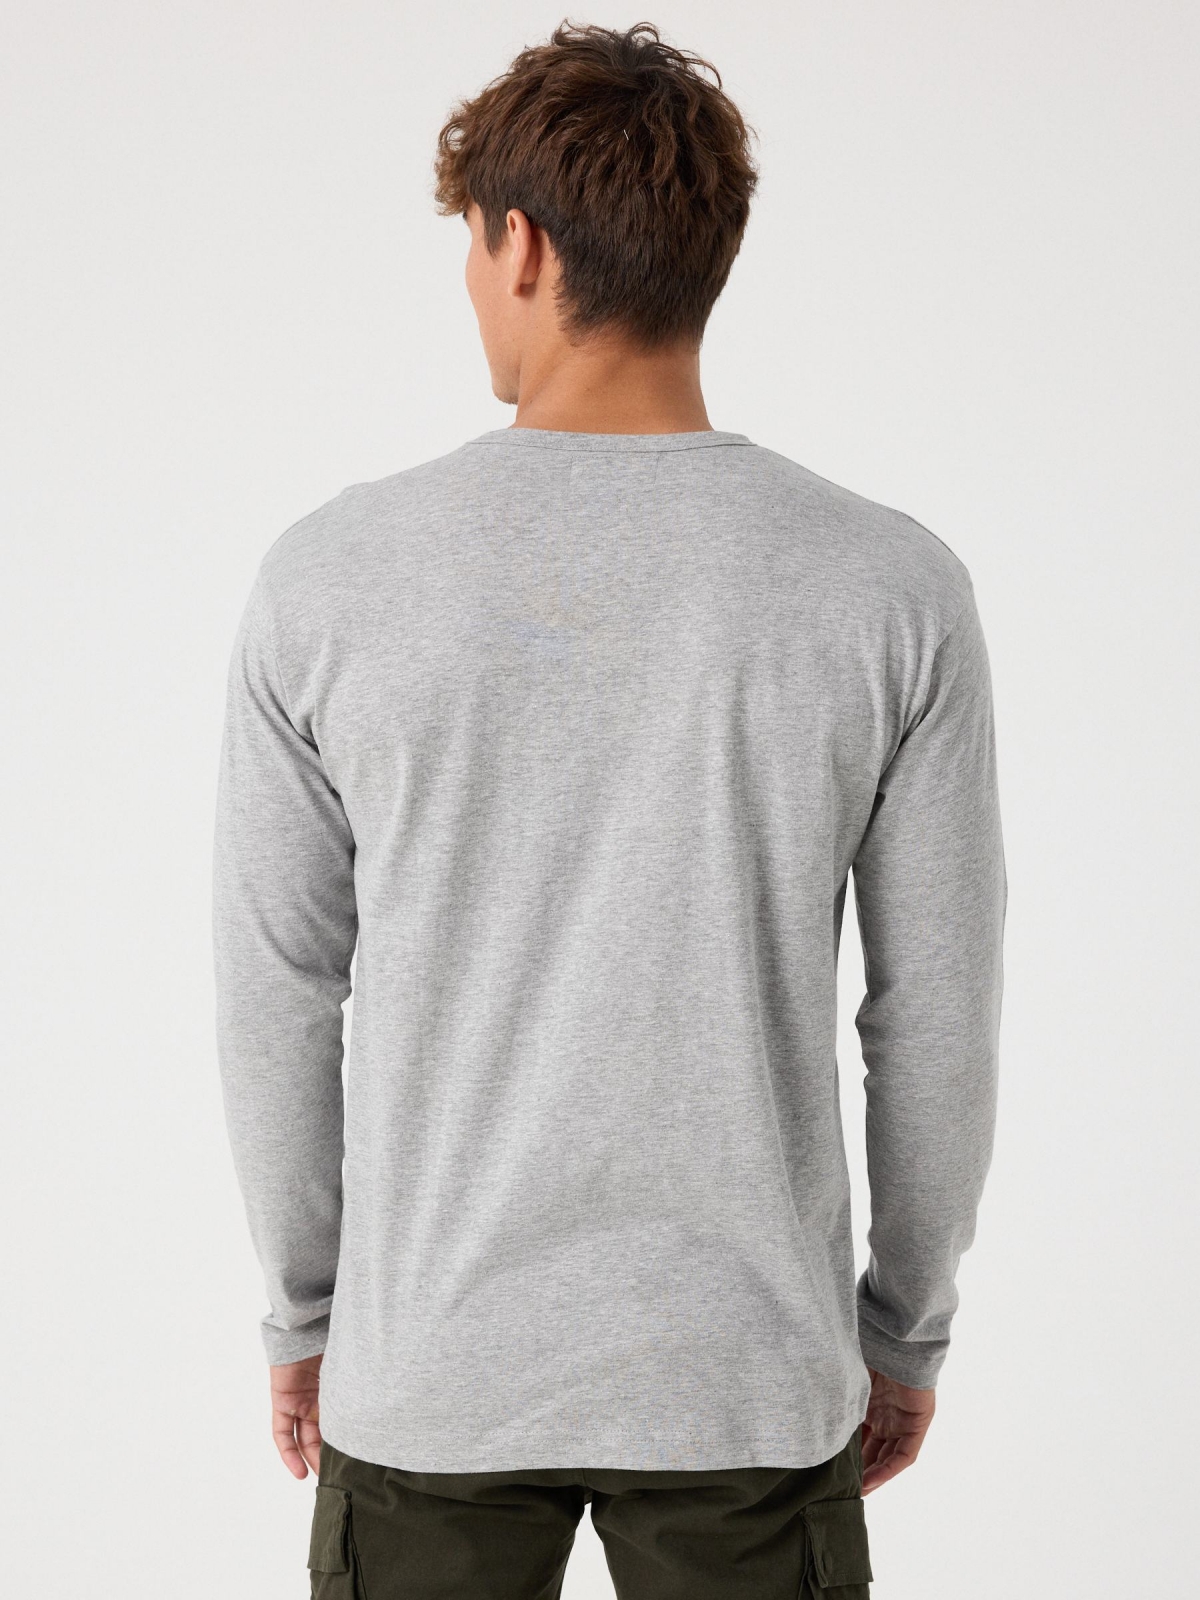 Basic long sleeve t-shirt melange grey middle back view